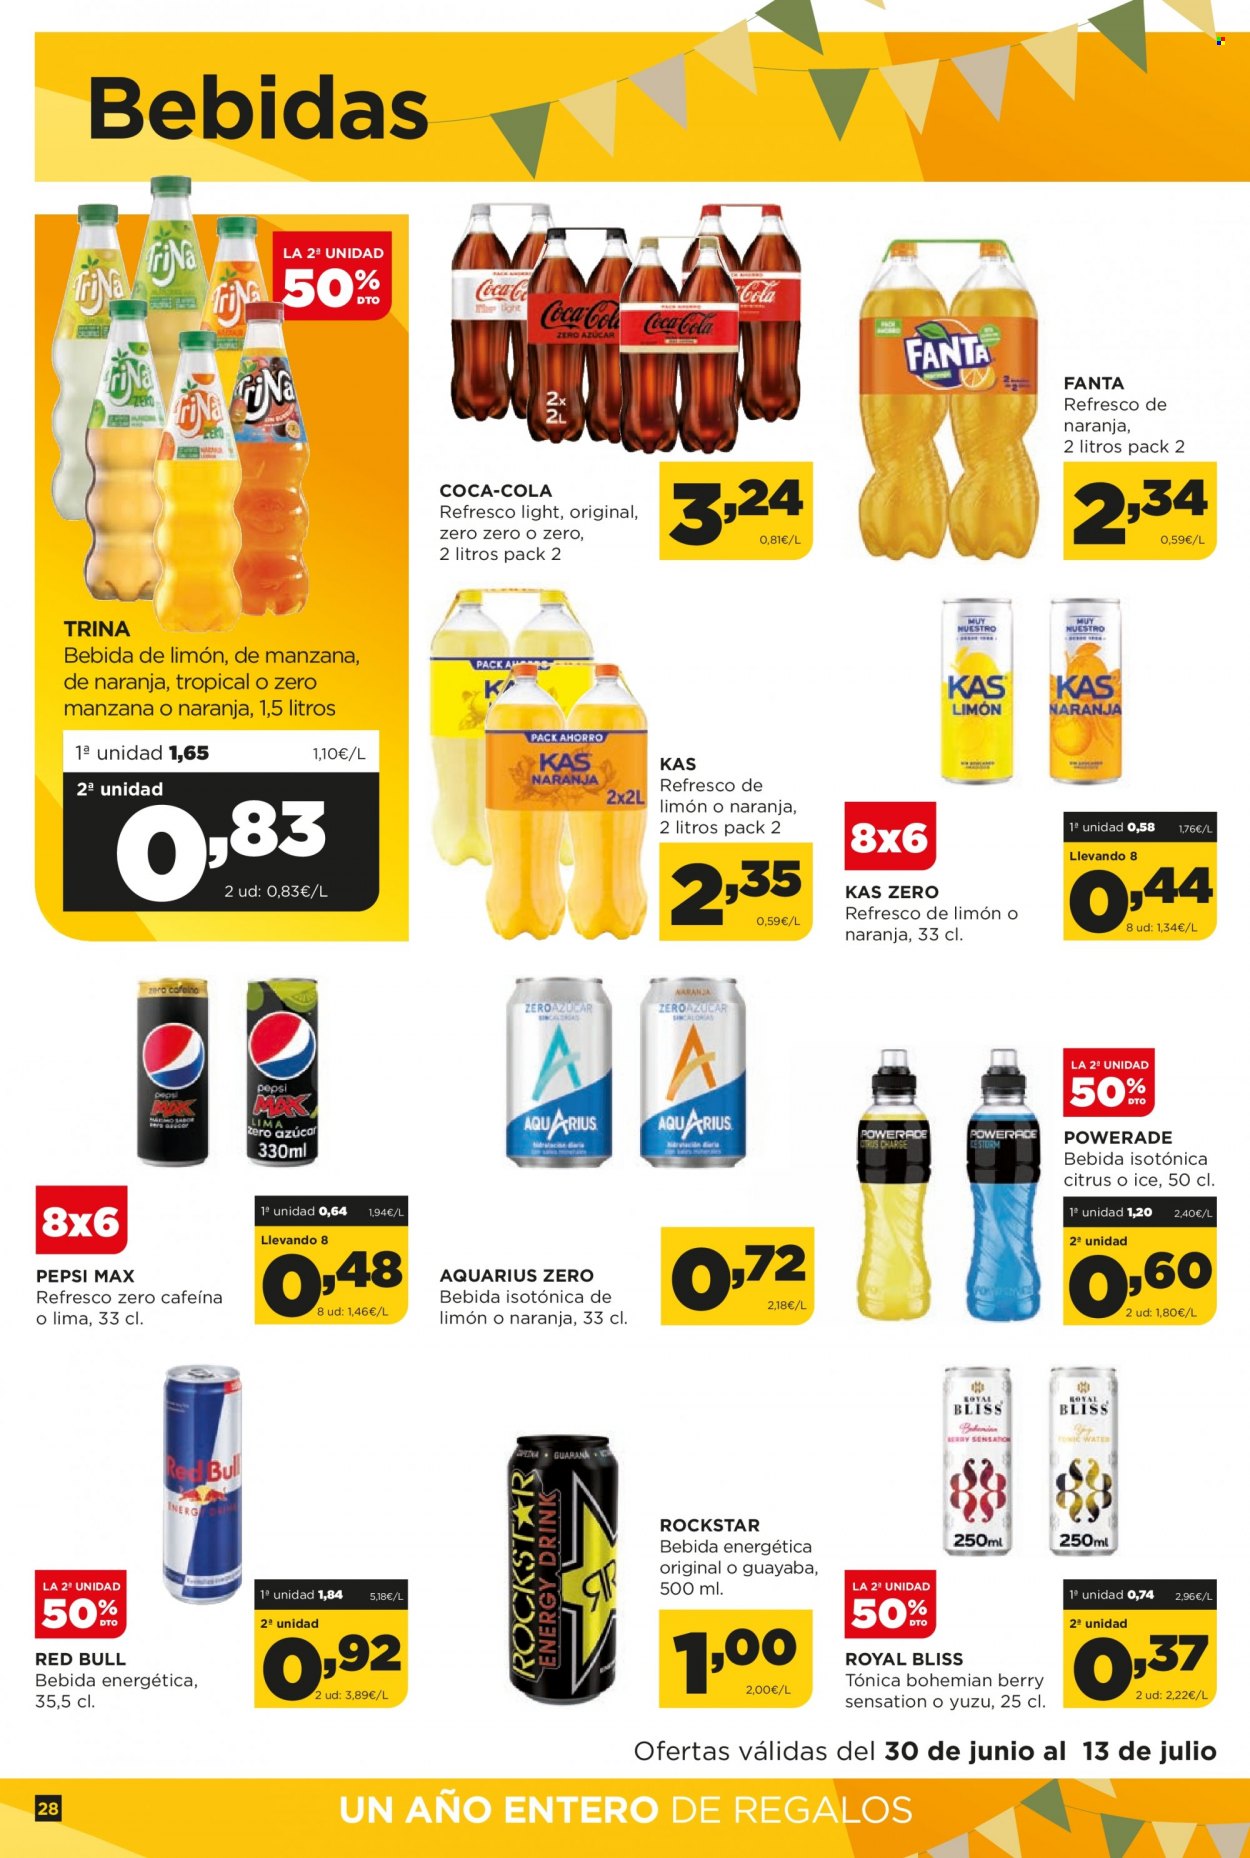 thumbnail - Folleto actual Alimerka - 30/06/22 - 13/07/22 - Ventas - refresco, tonica, Aquarius, bebida, Coca-cola, bebida energética, Fanta, Red Bull, Pepsi. Página 28.